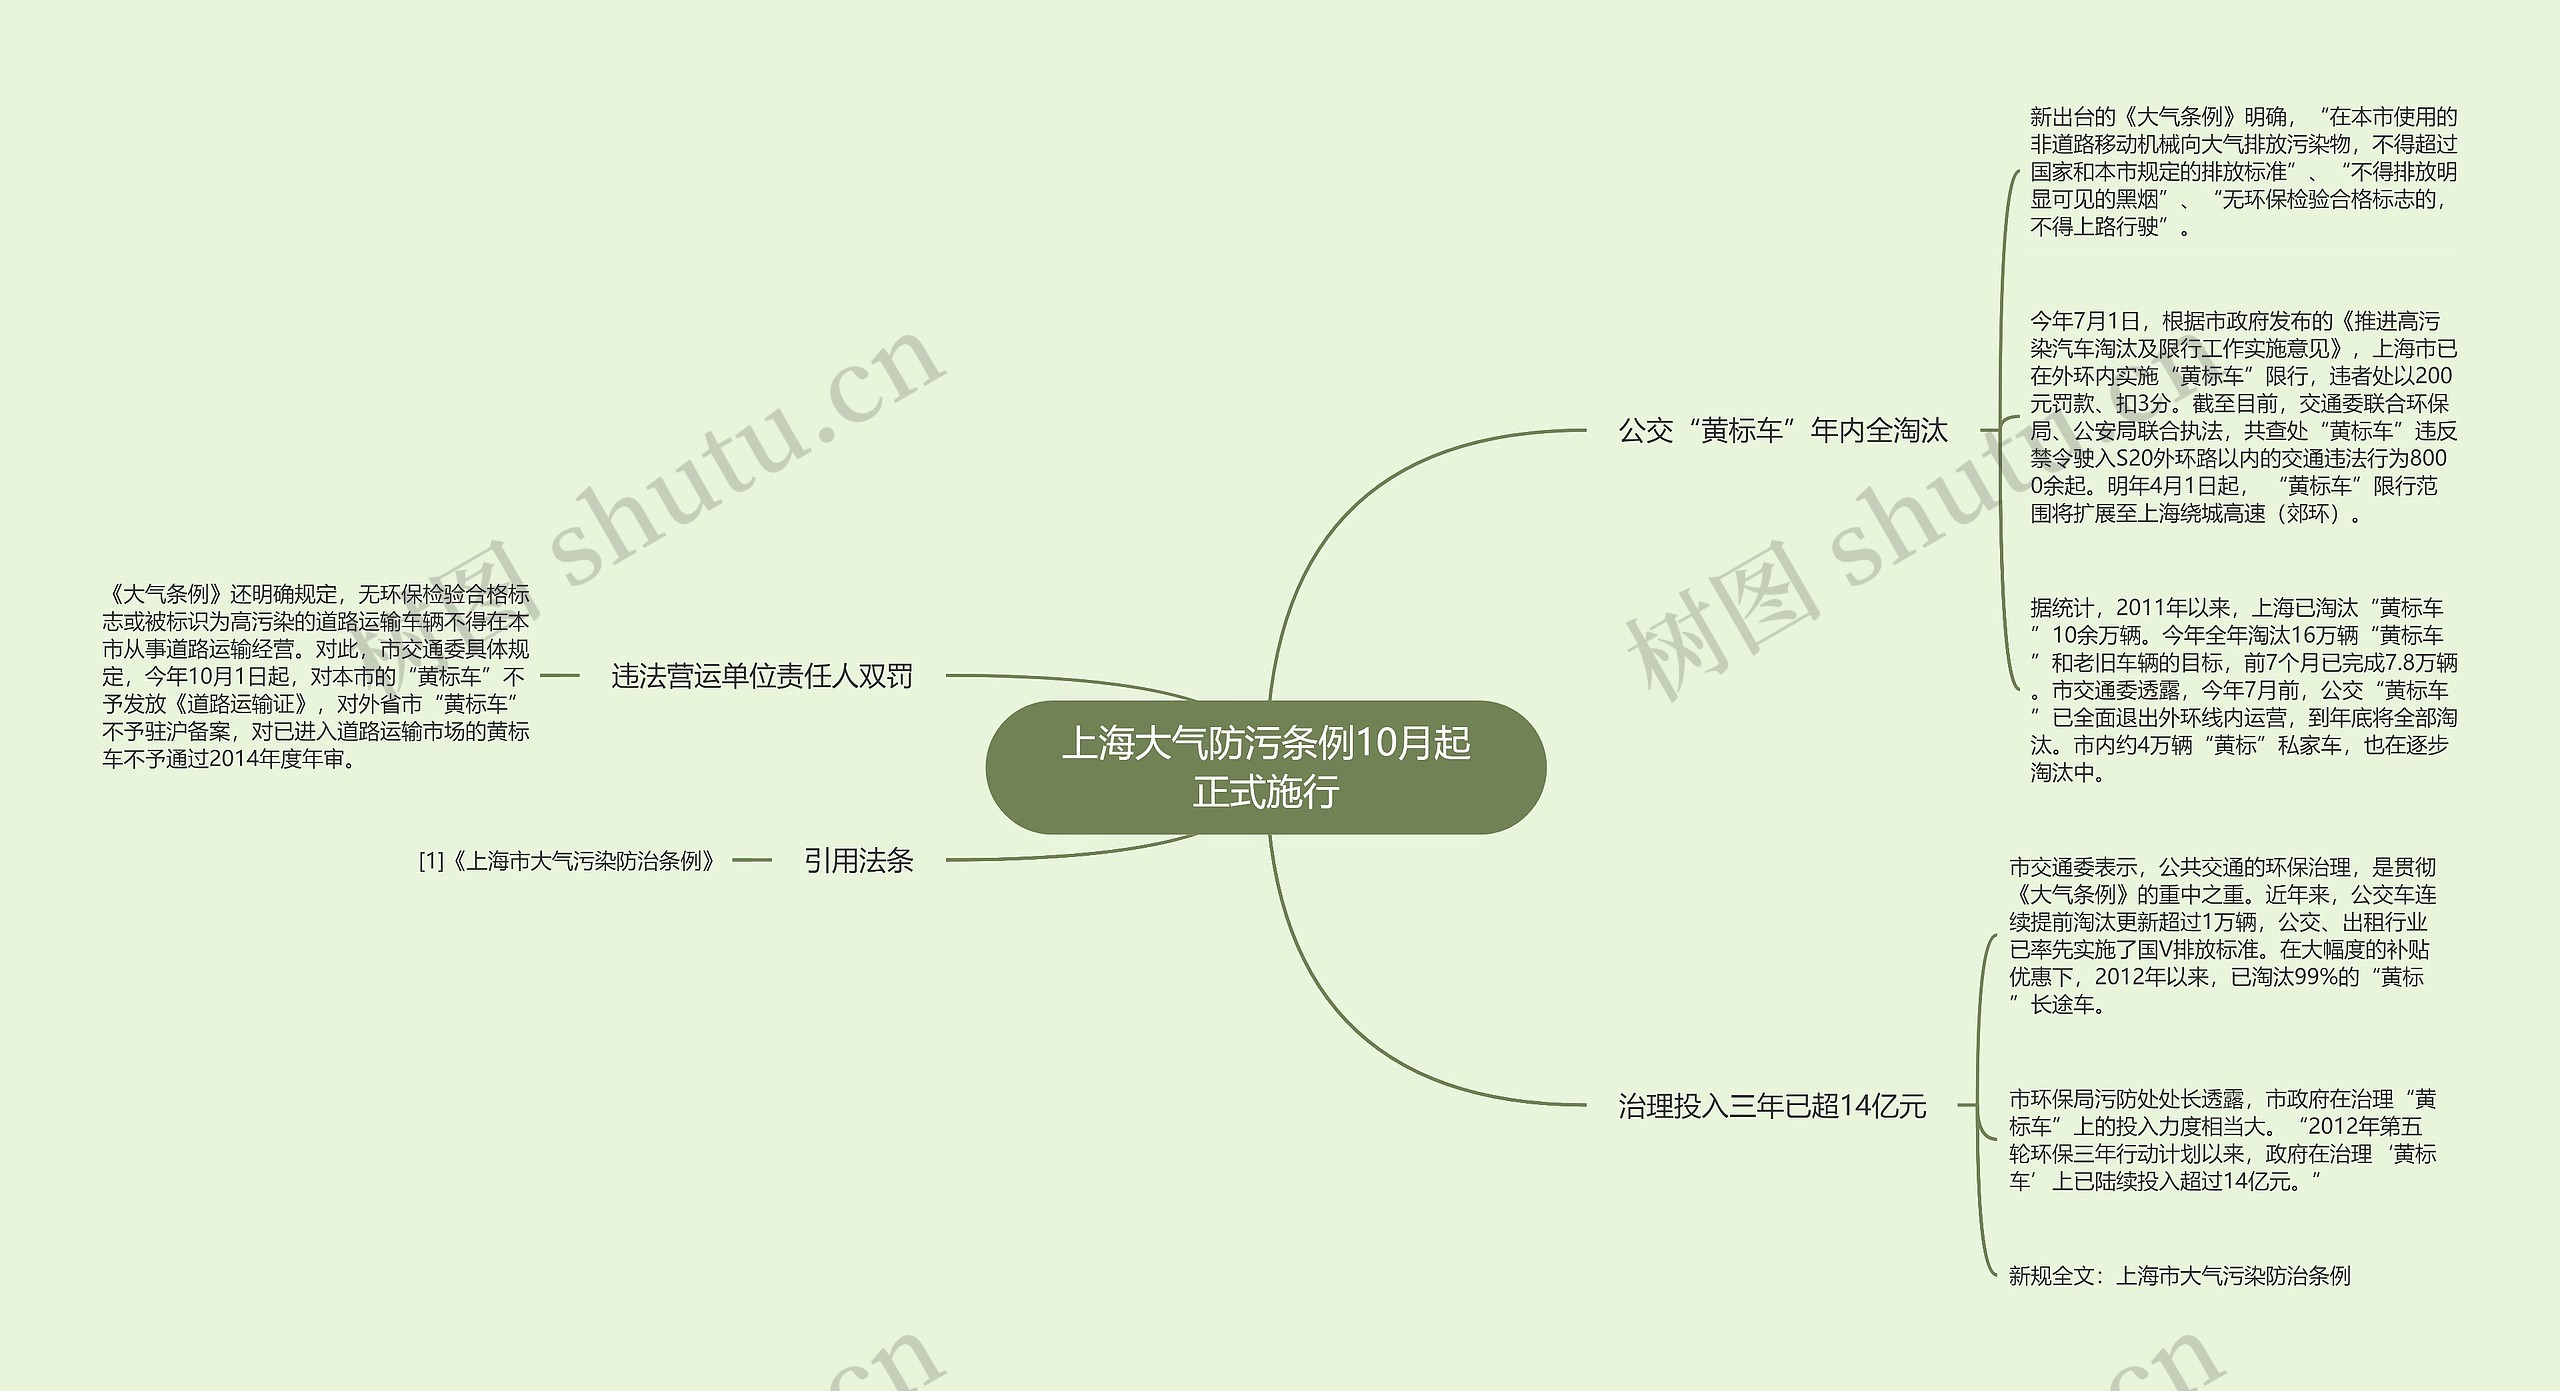 上海大气防污条例10月起正式施行思维导图